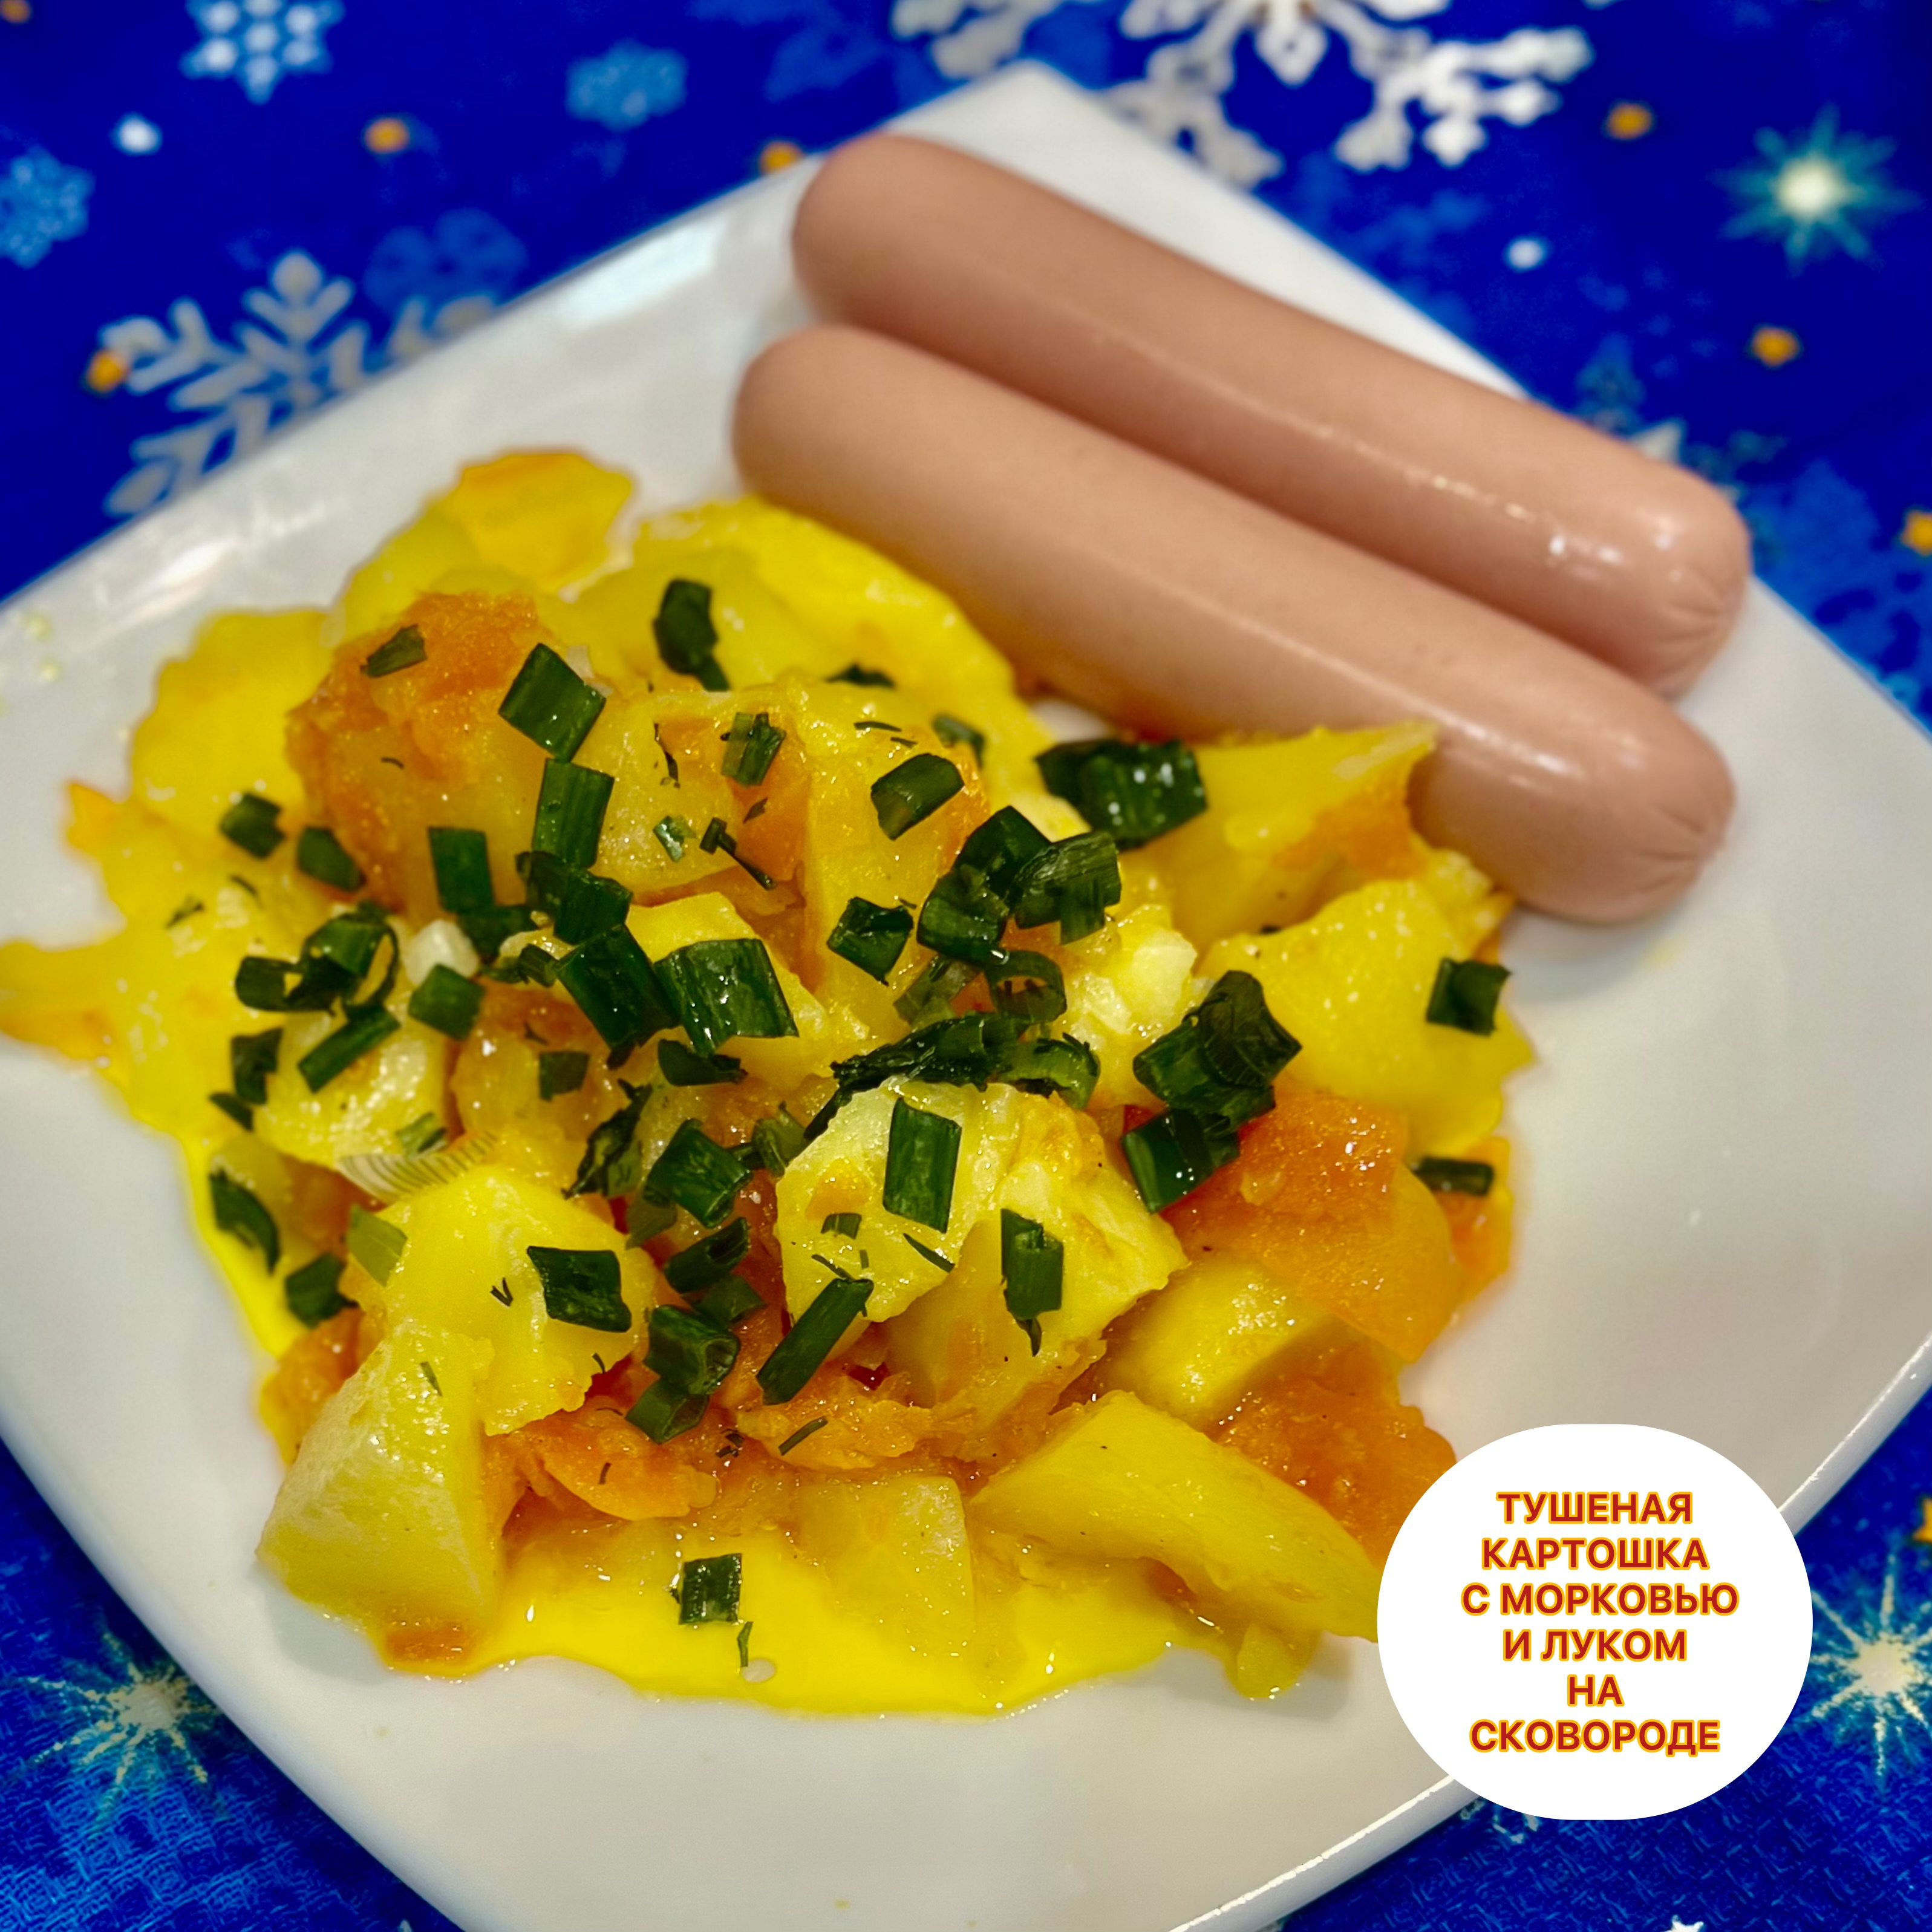 Русская кухня -Тушеная картошка с морковью и луком на сковороде 